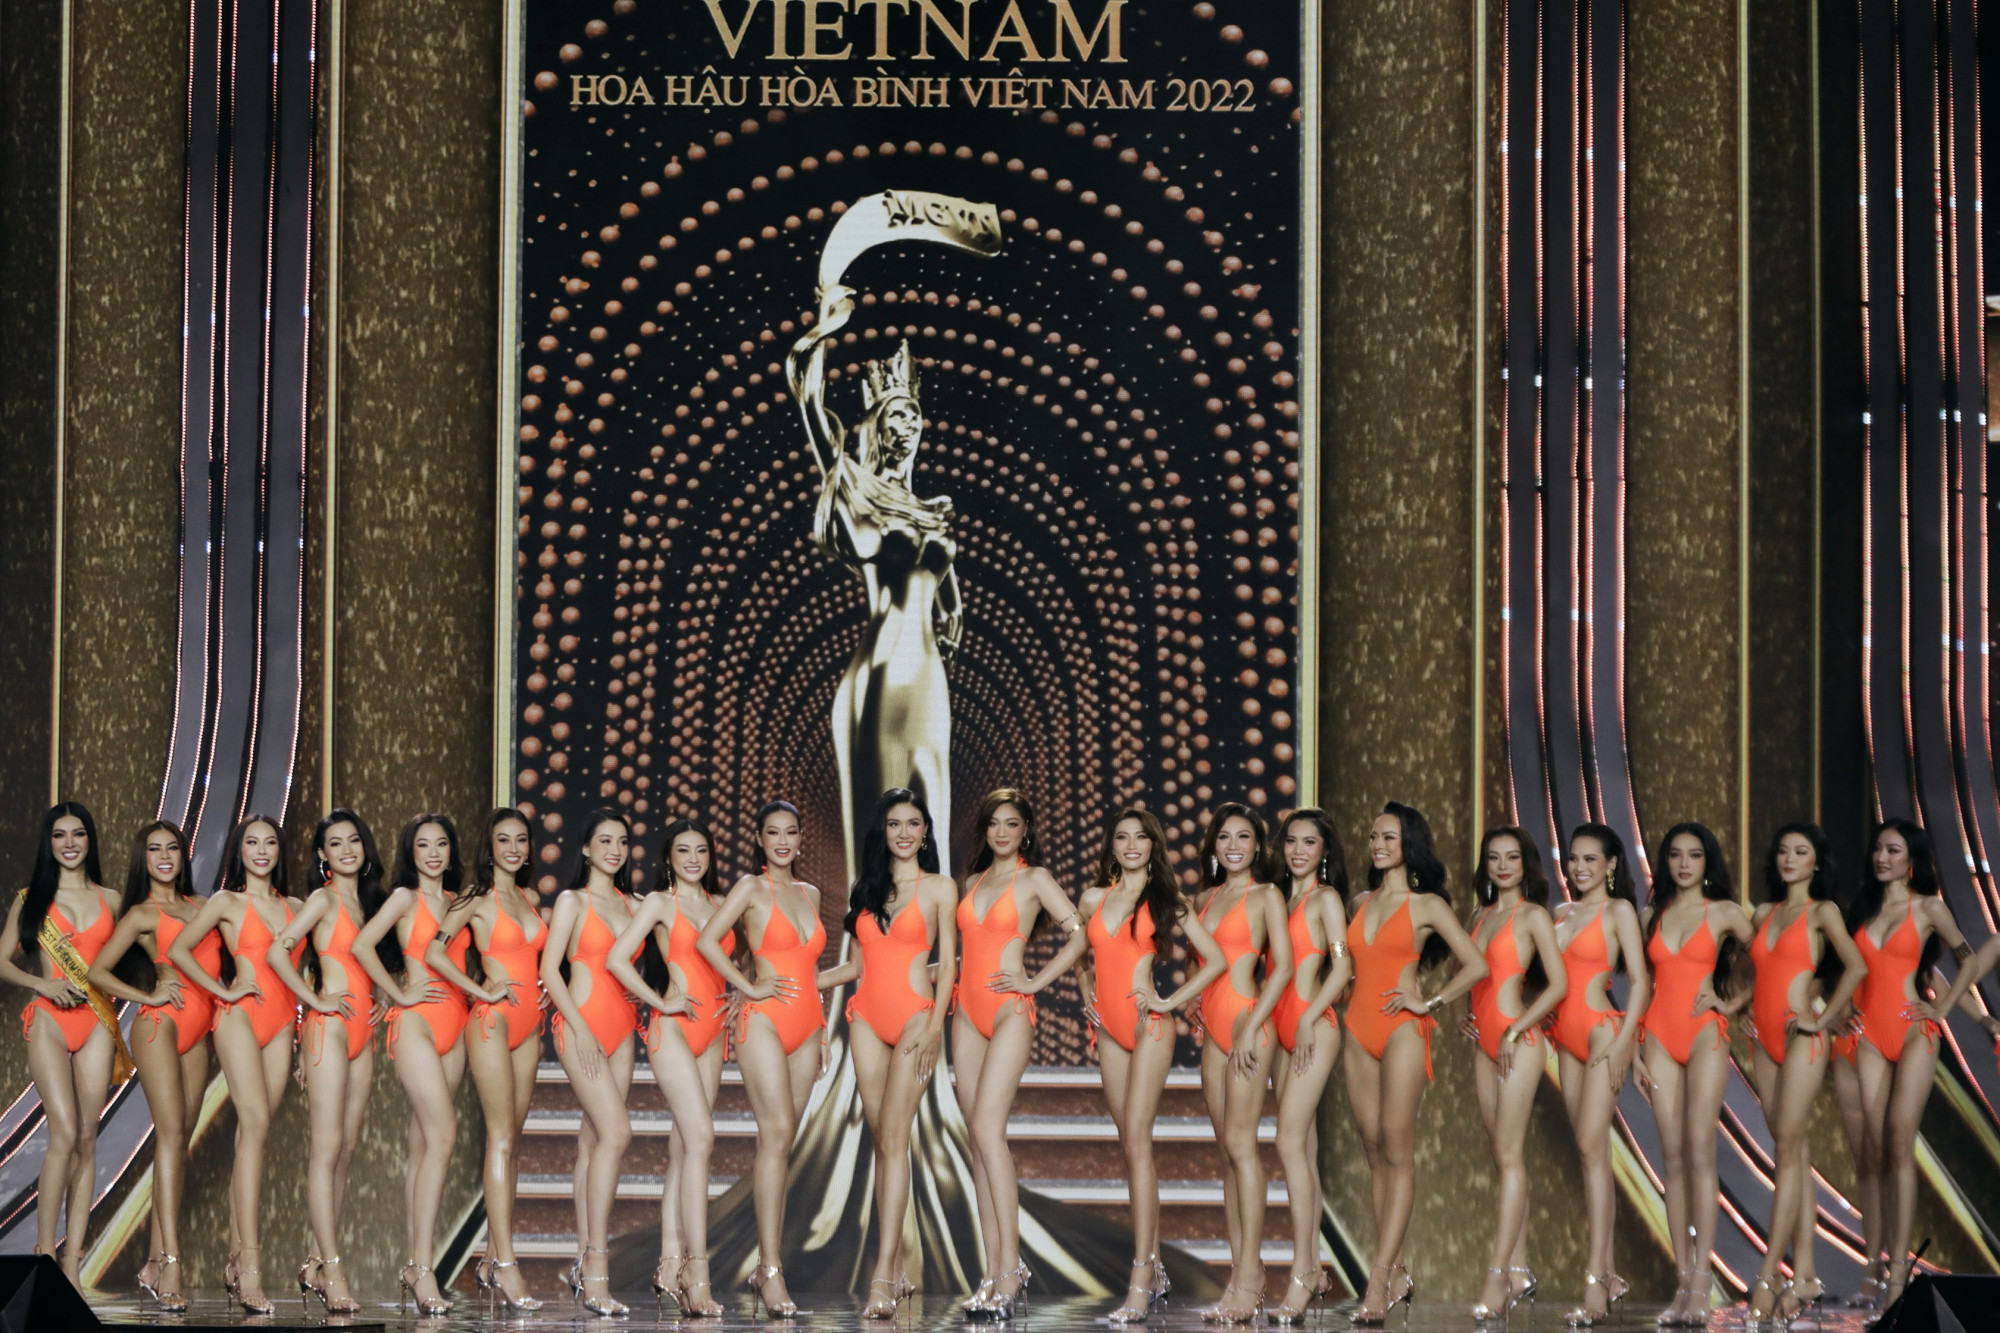 Top 20 chung cuộc của Hoa hậu Hoà bình Việt Nam 2022